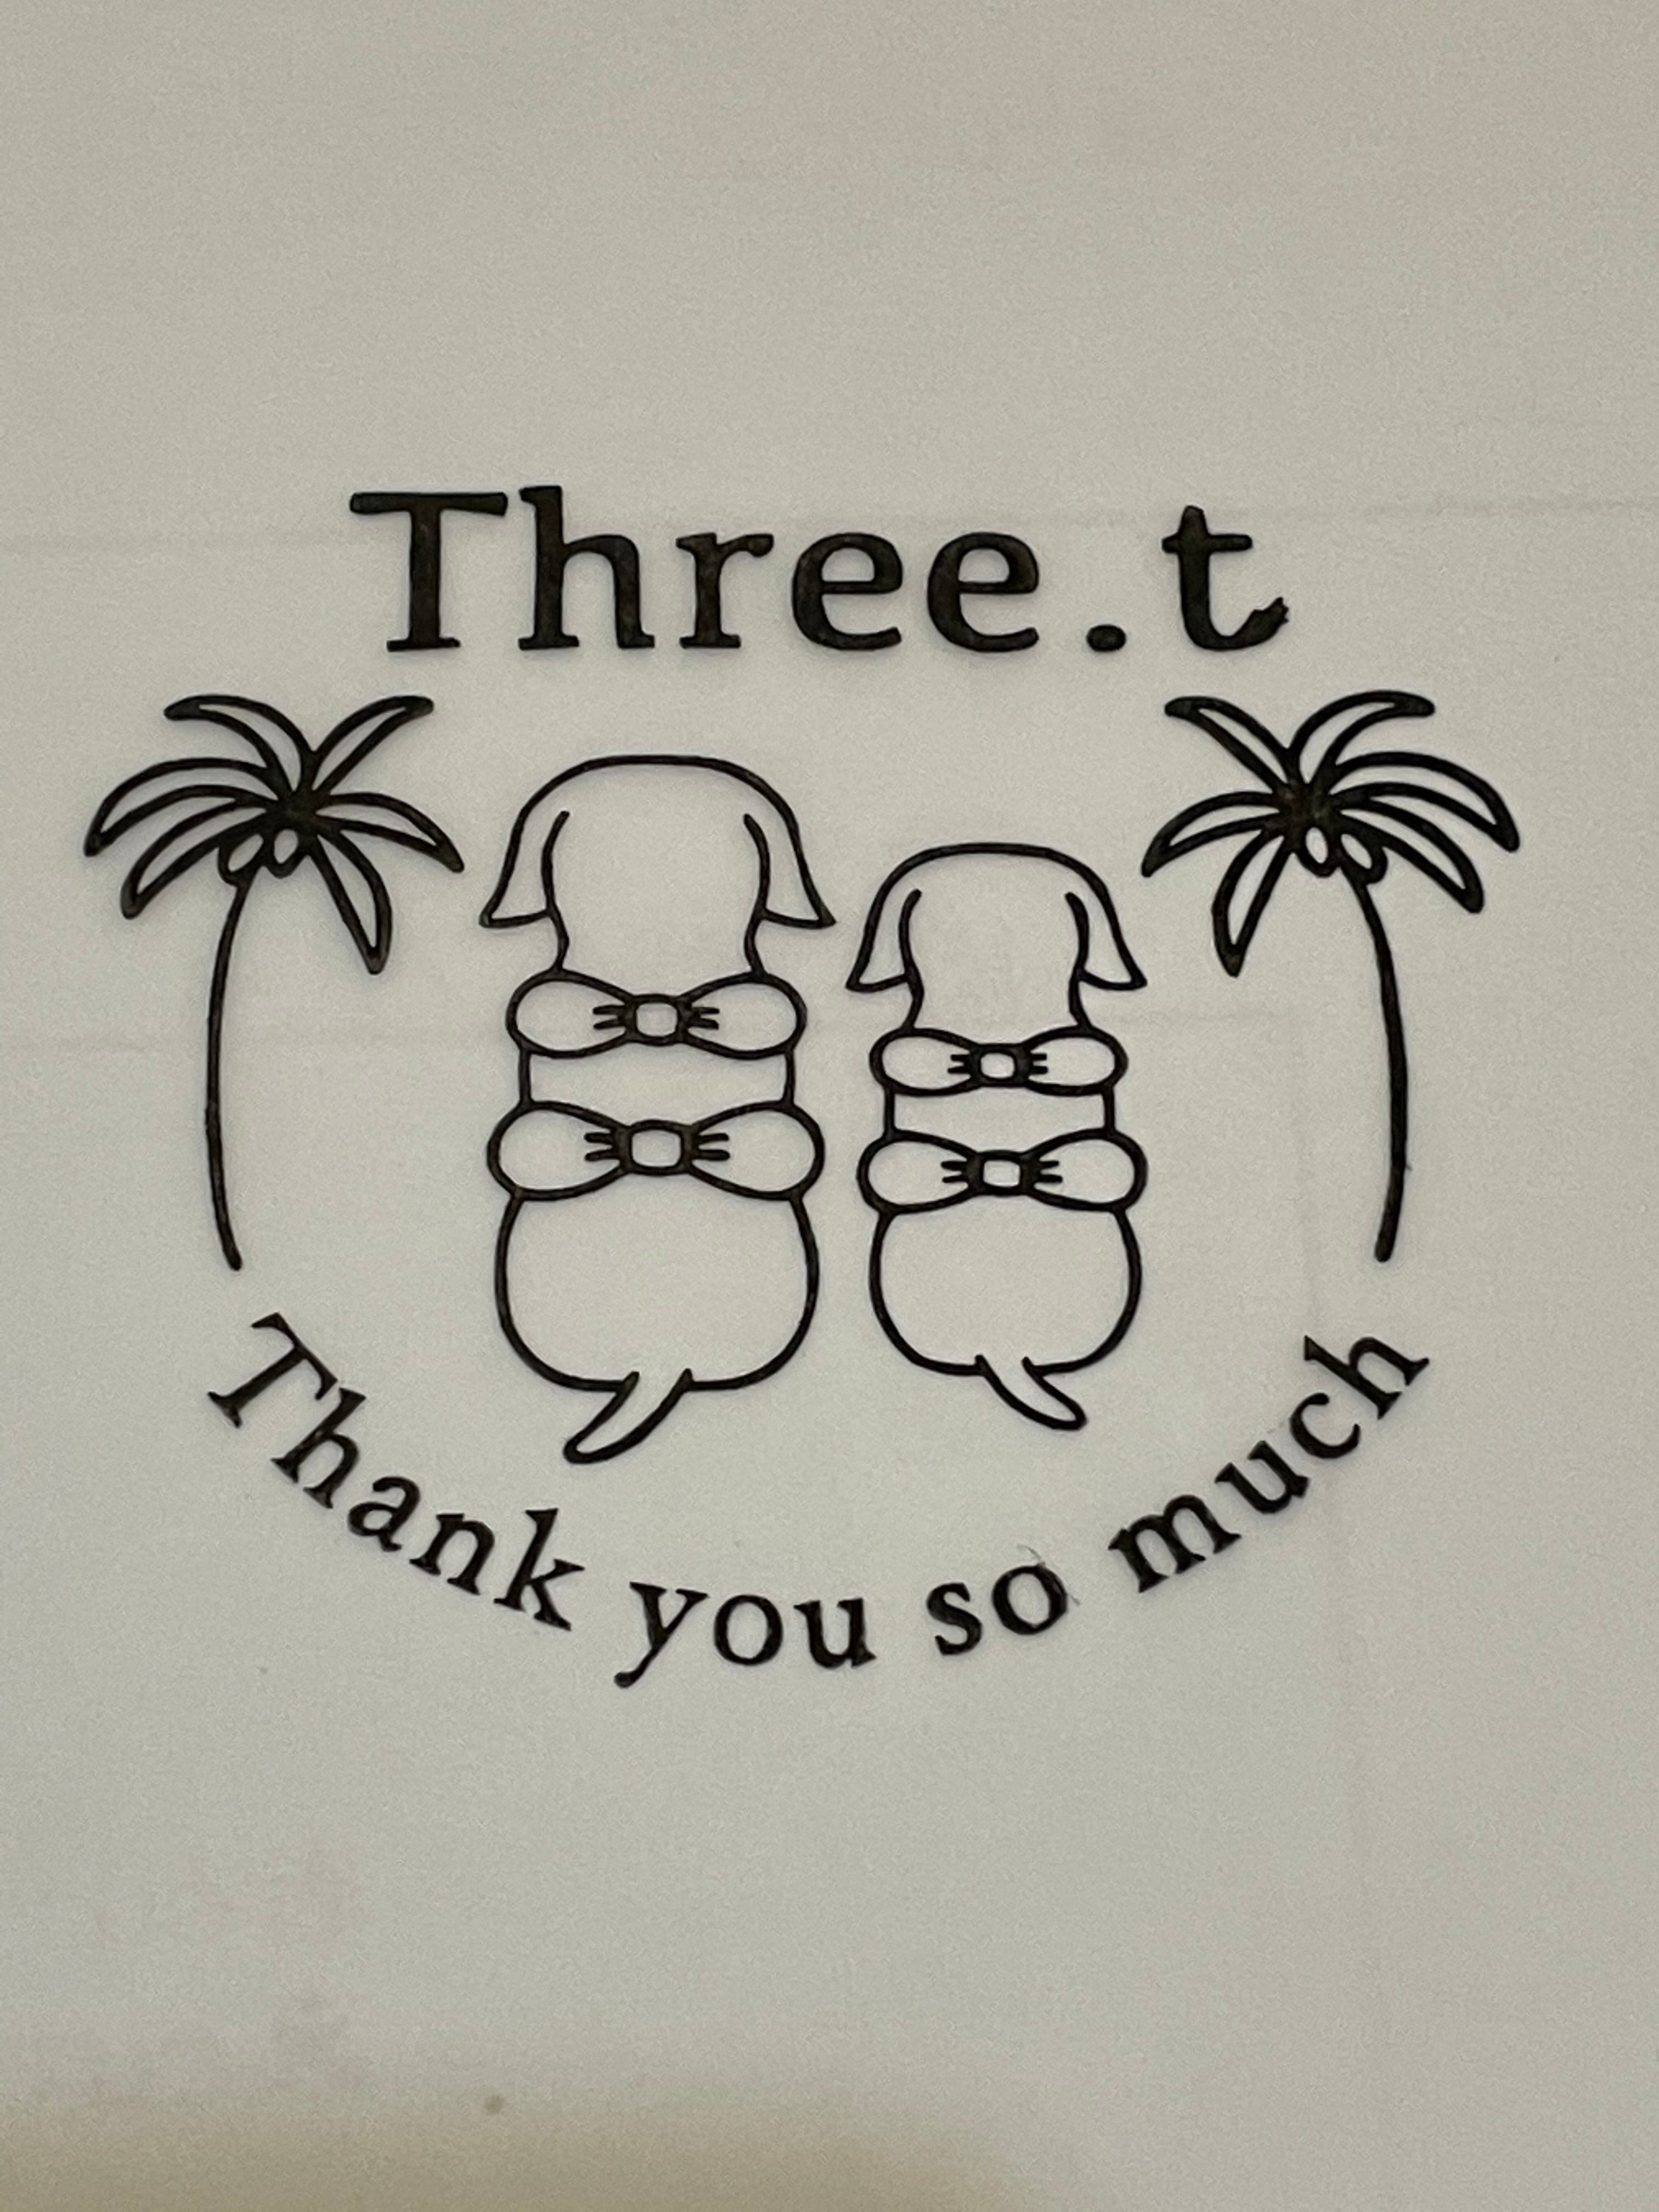 Three.t